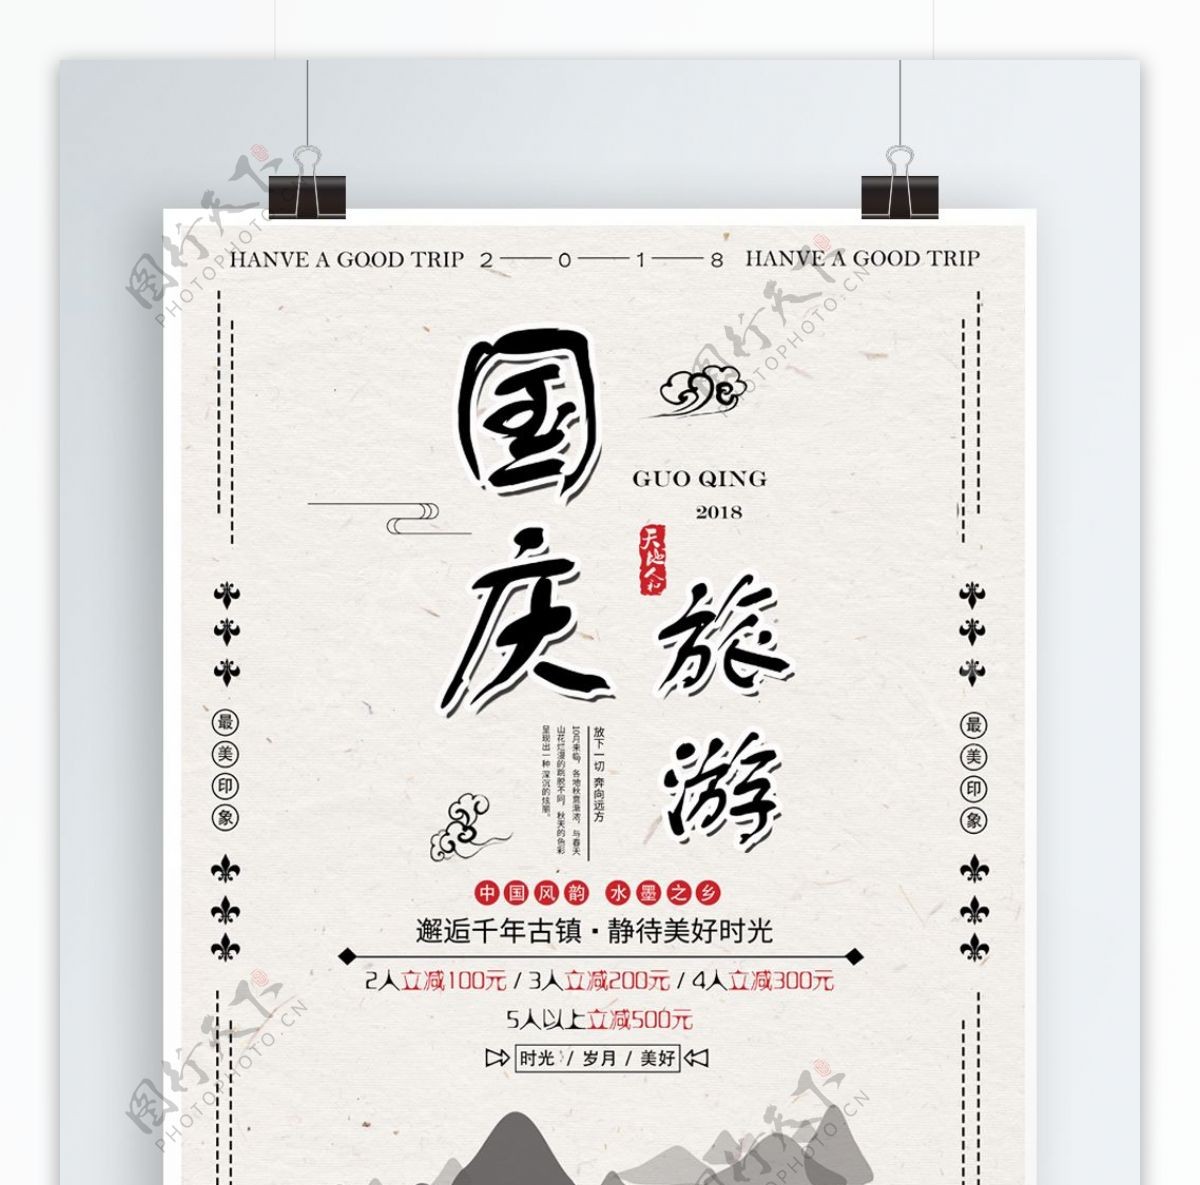 简约中国风国庆旅游假期海报